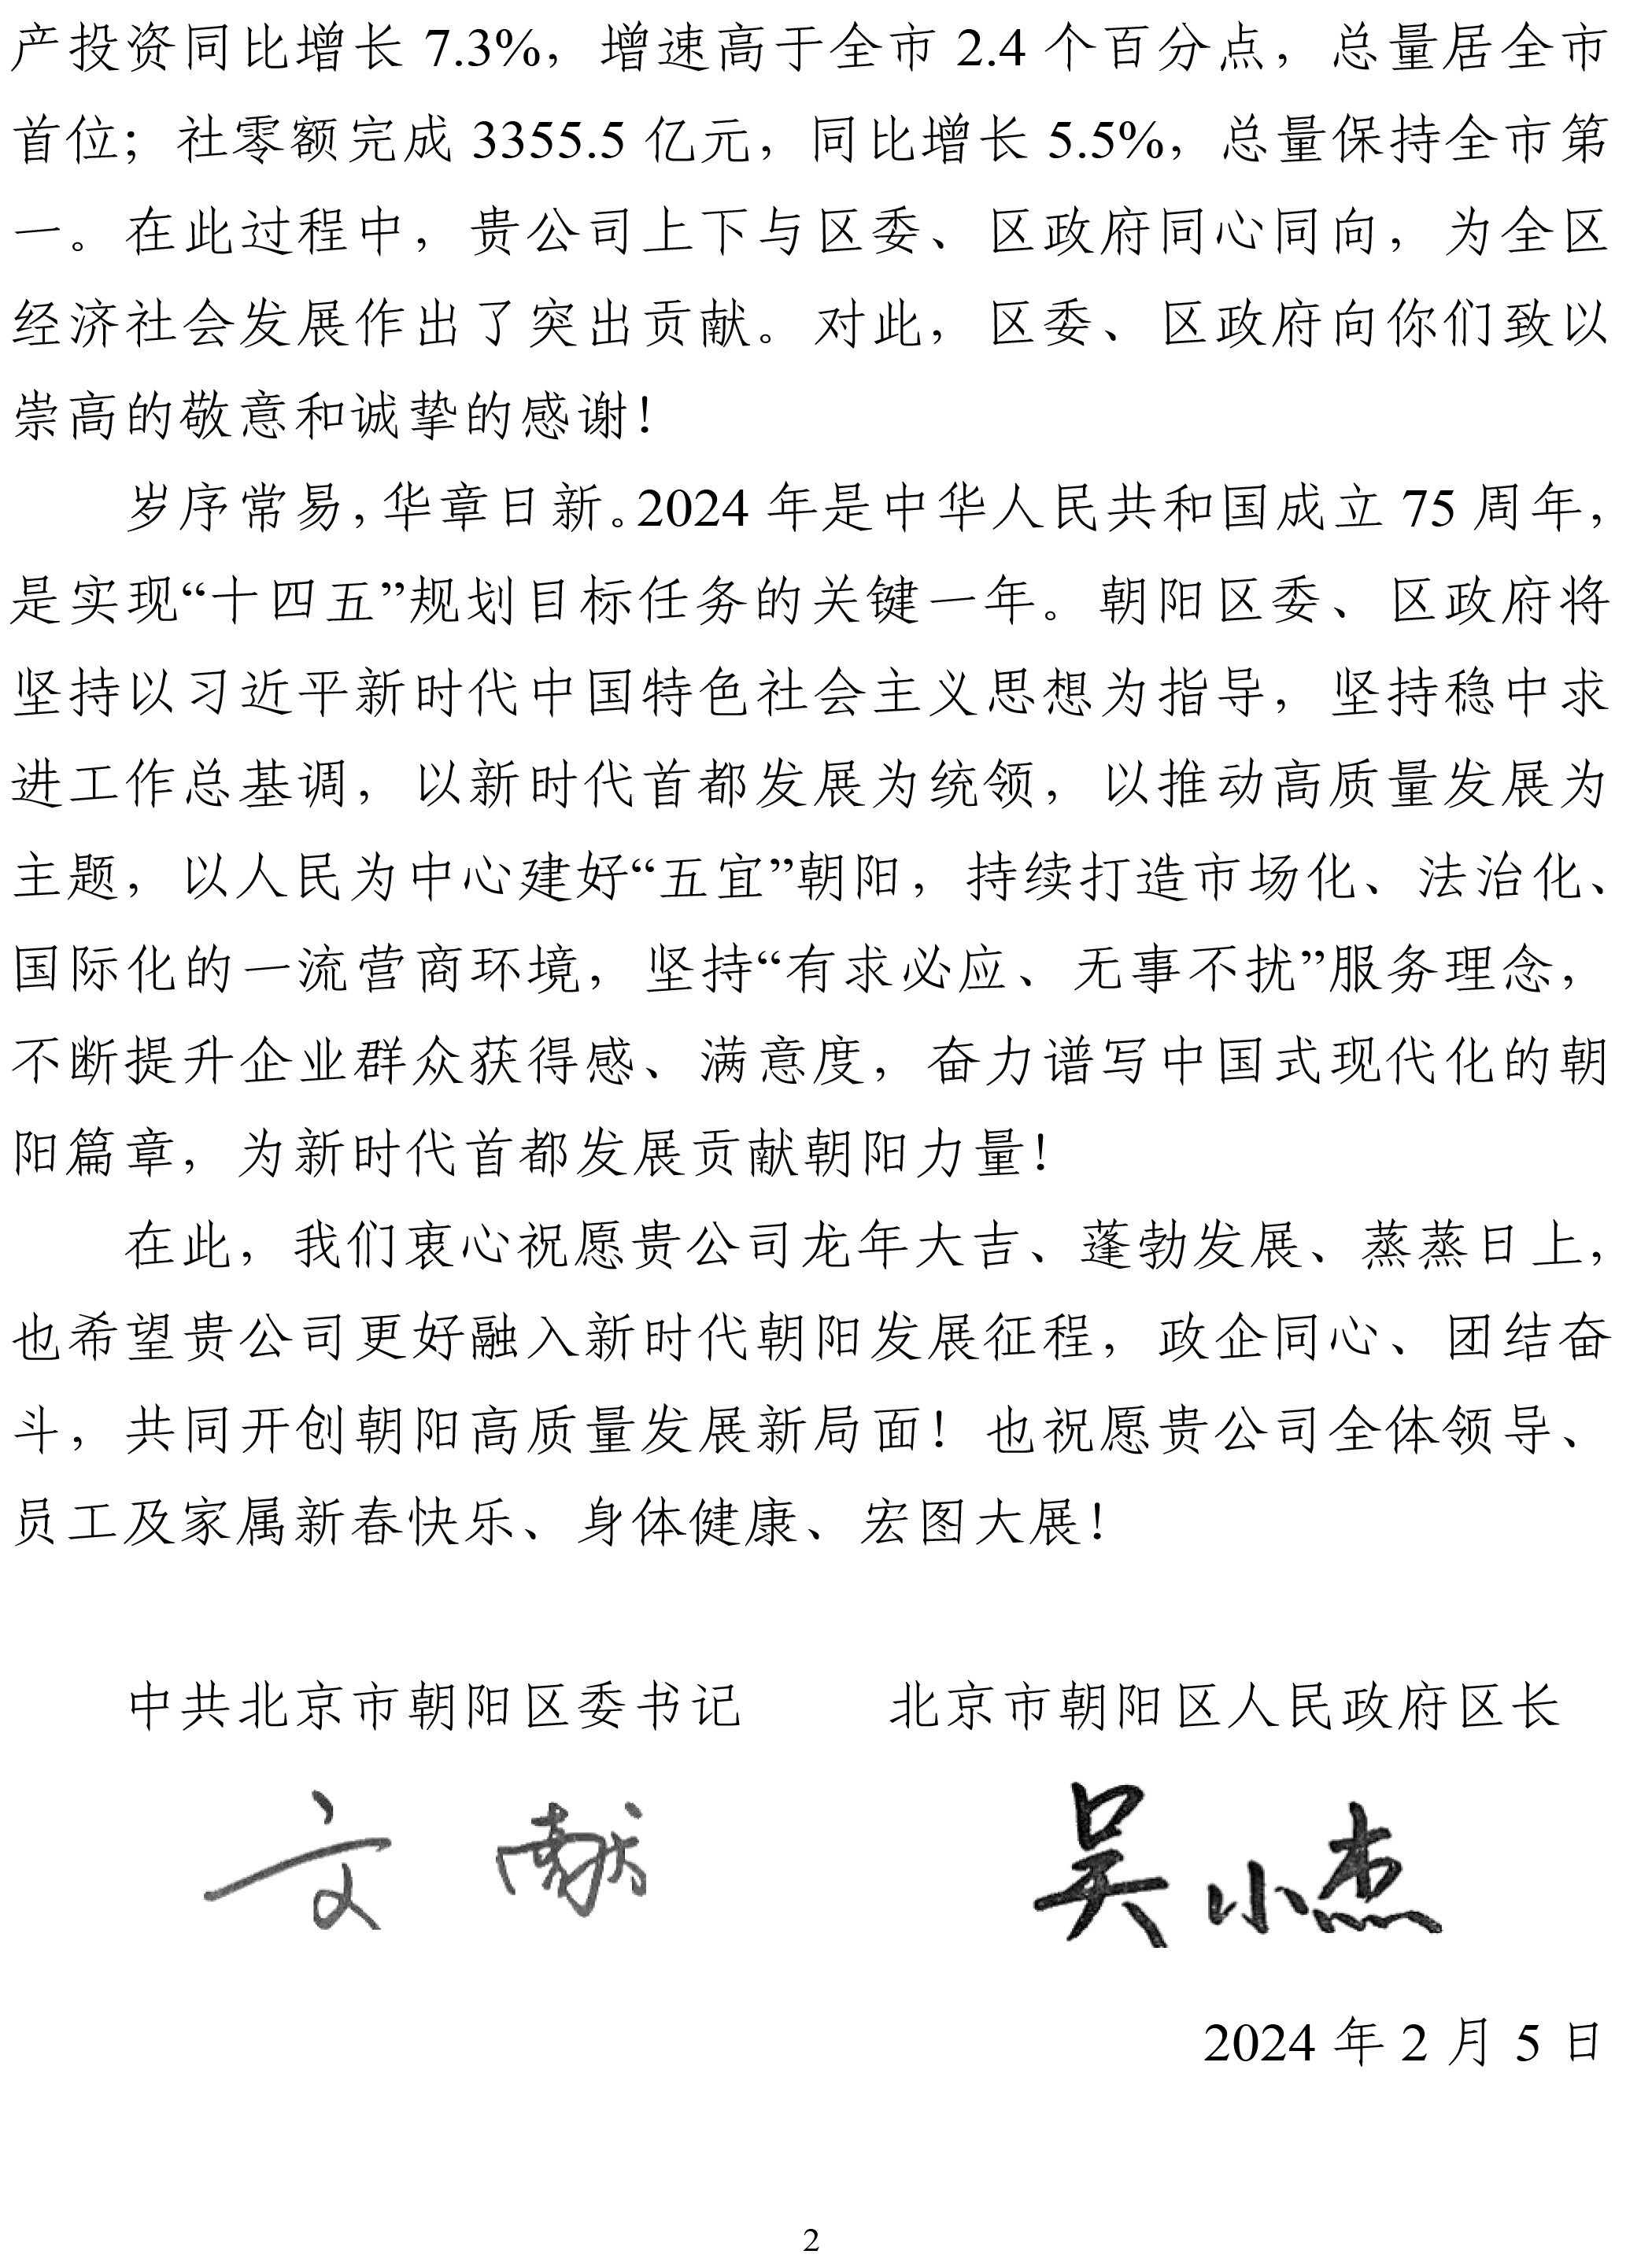 北京市朝阳区区委、区政府致恩核（北京）信息技术有限公司感谢信